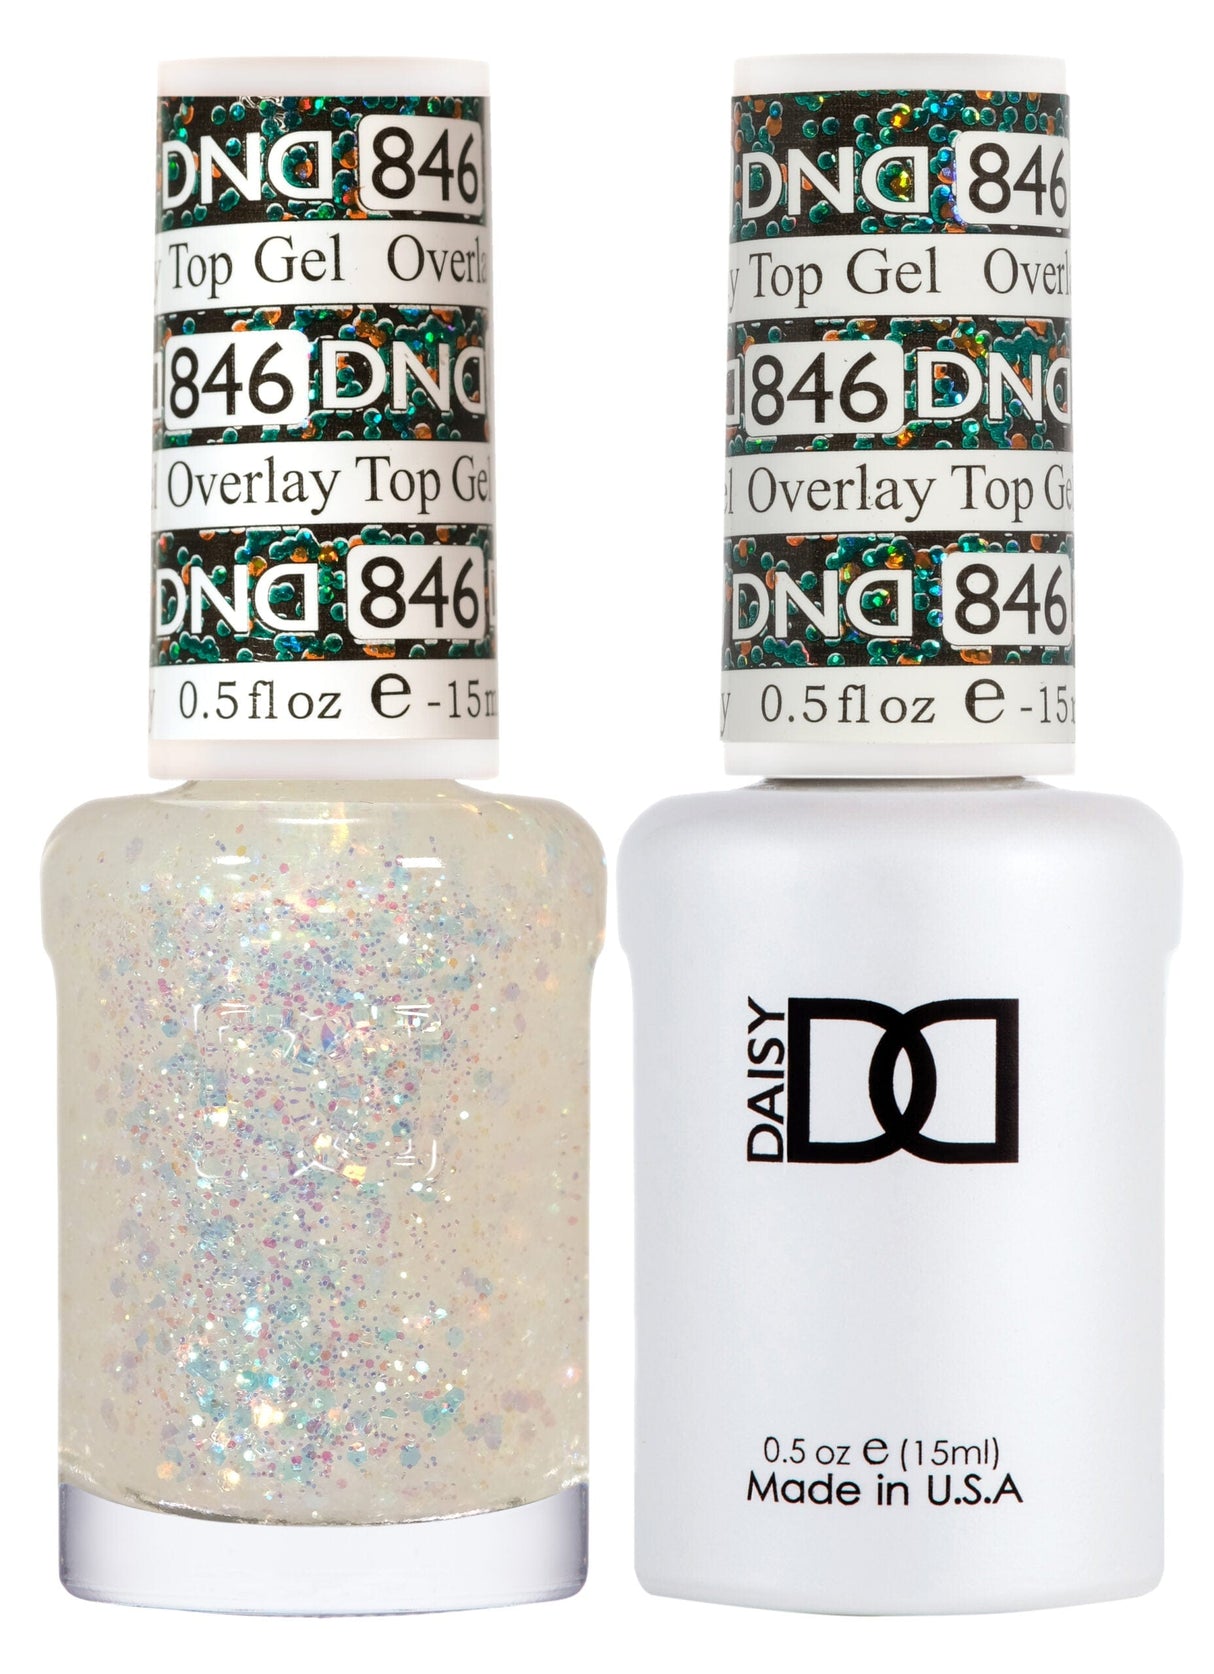 DND Duo Gel Matching Color 846 Overlay Top Gel